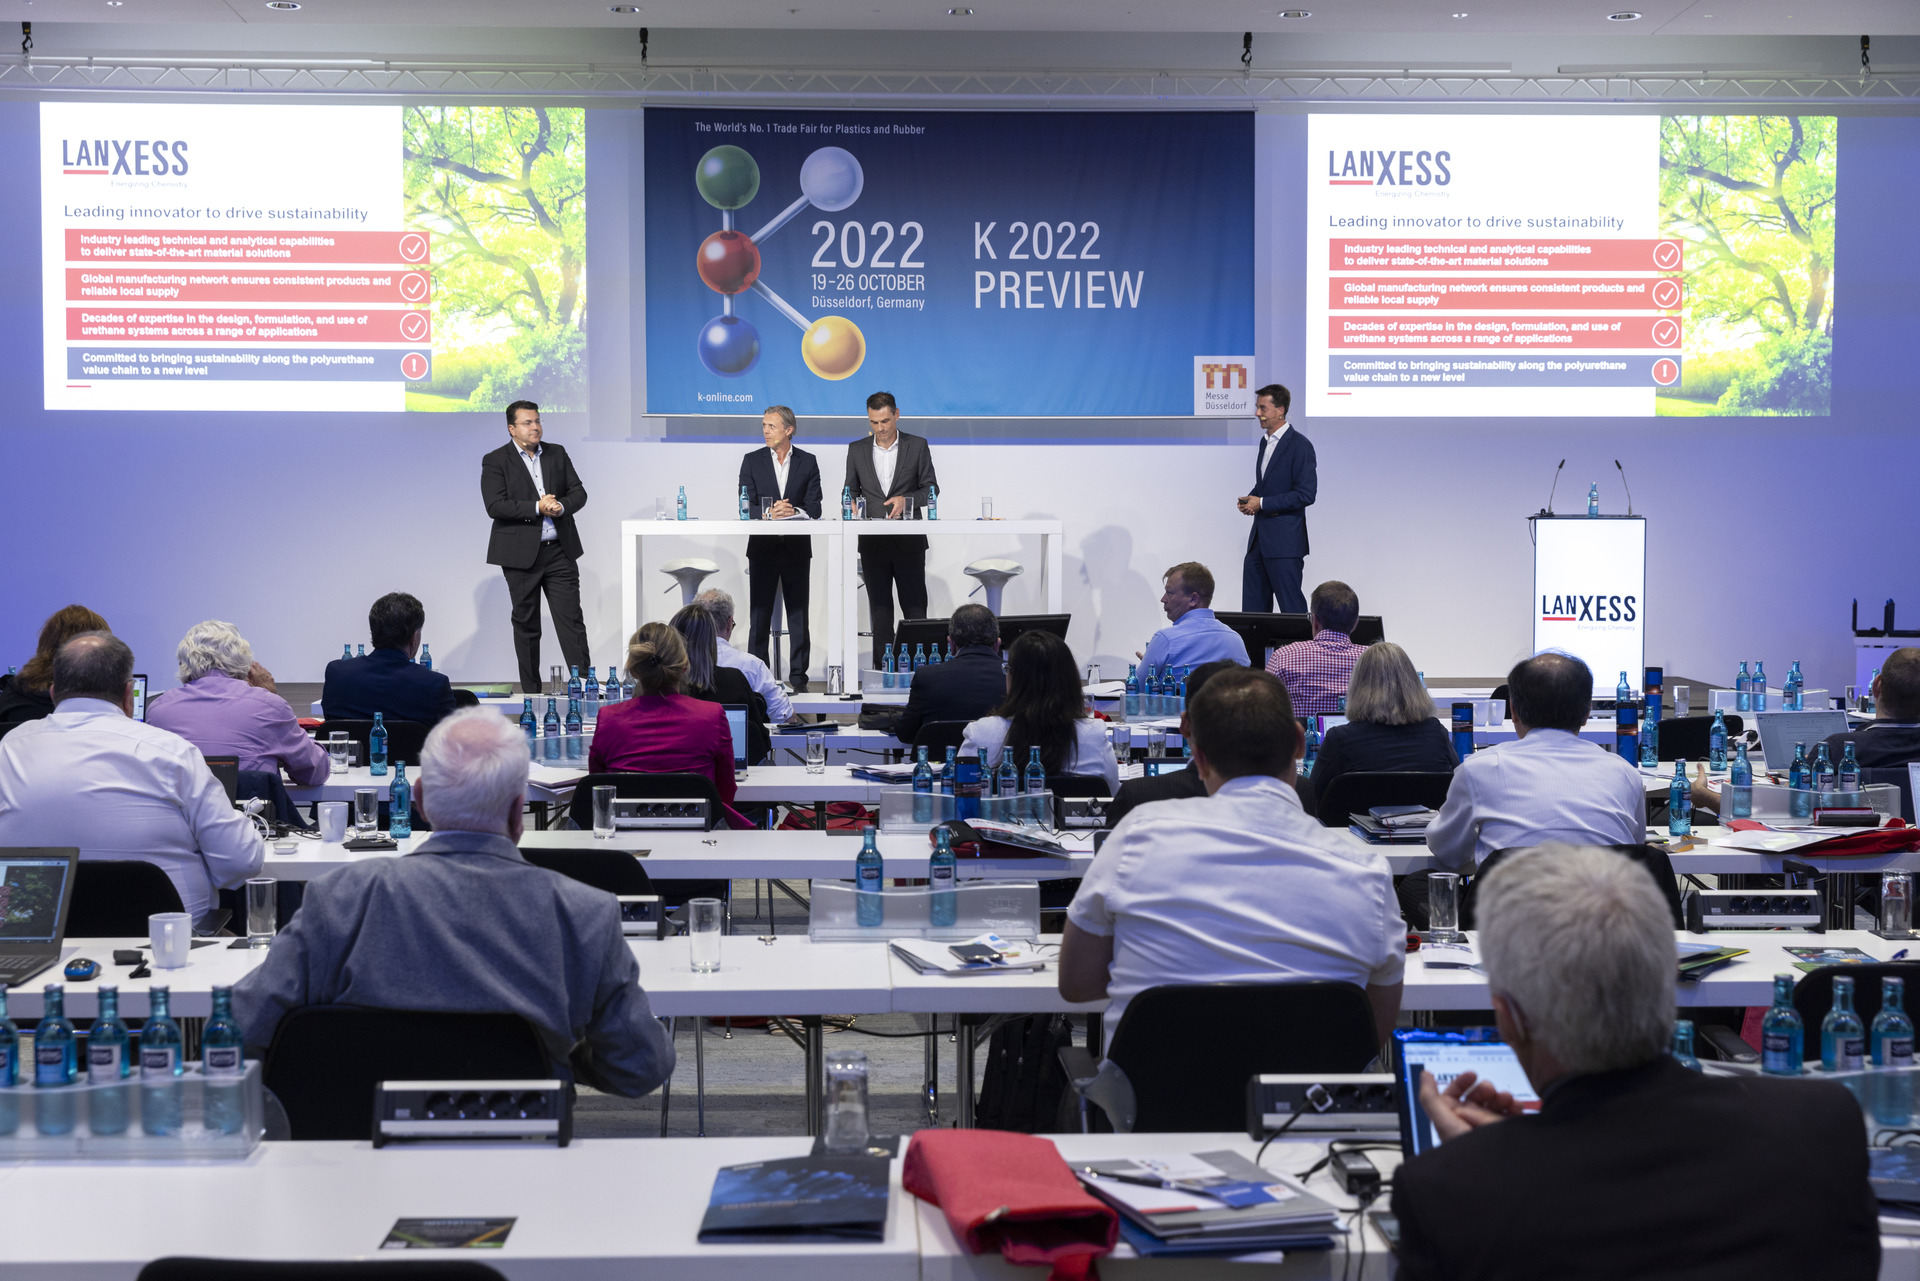 LANXESS stellt auf der K 2022 Materialentwicklungen sowie neue Verfahren und Technologien für die Kunststoffbranche vor.